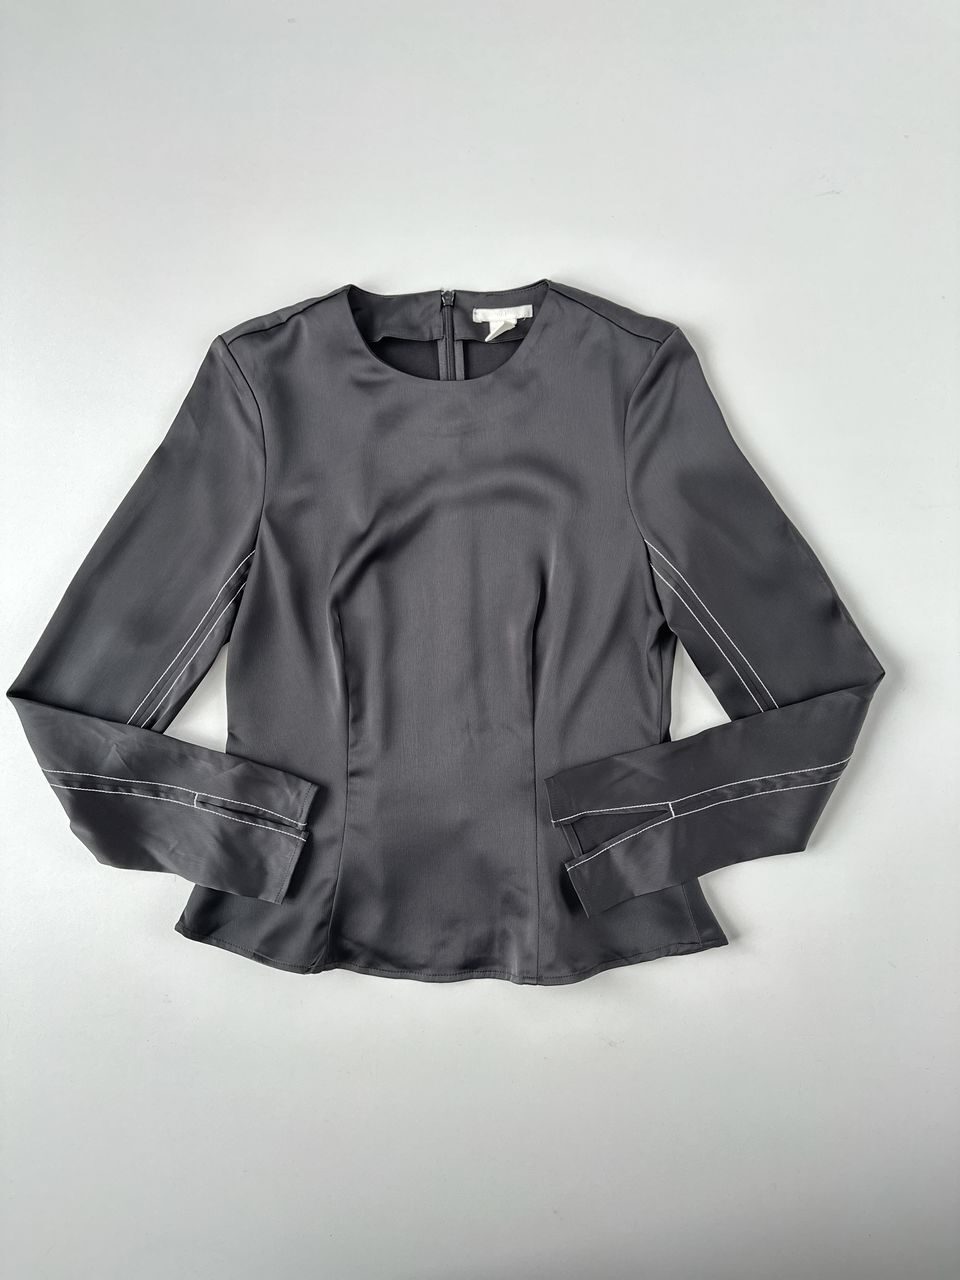 Блуза черного цвета из атласной ткани с длинными рукавами, застежка-молния сзади с потайным крючком на шее, разрезы внизу рукавов размер  EUR 36 (42 RUS) H&M